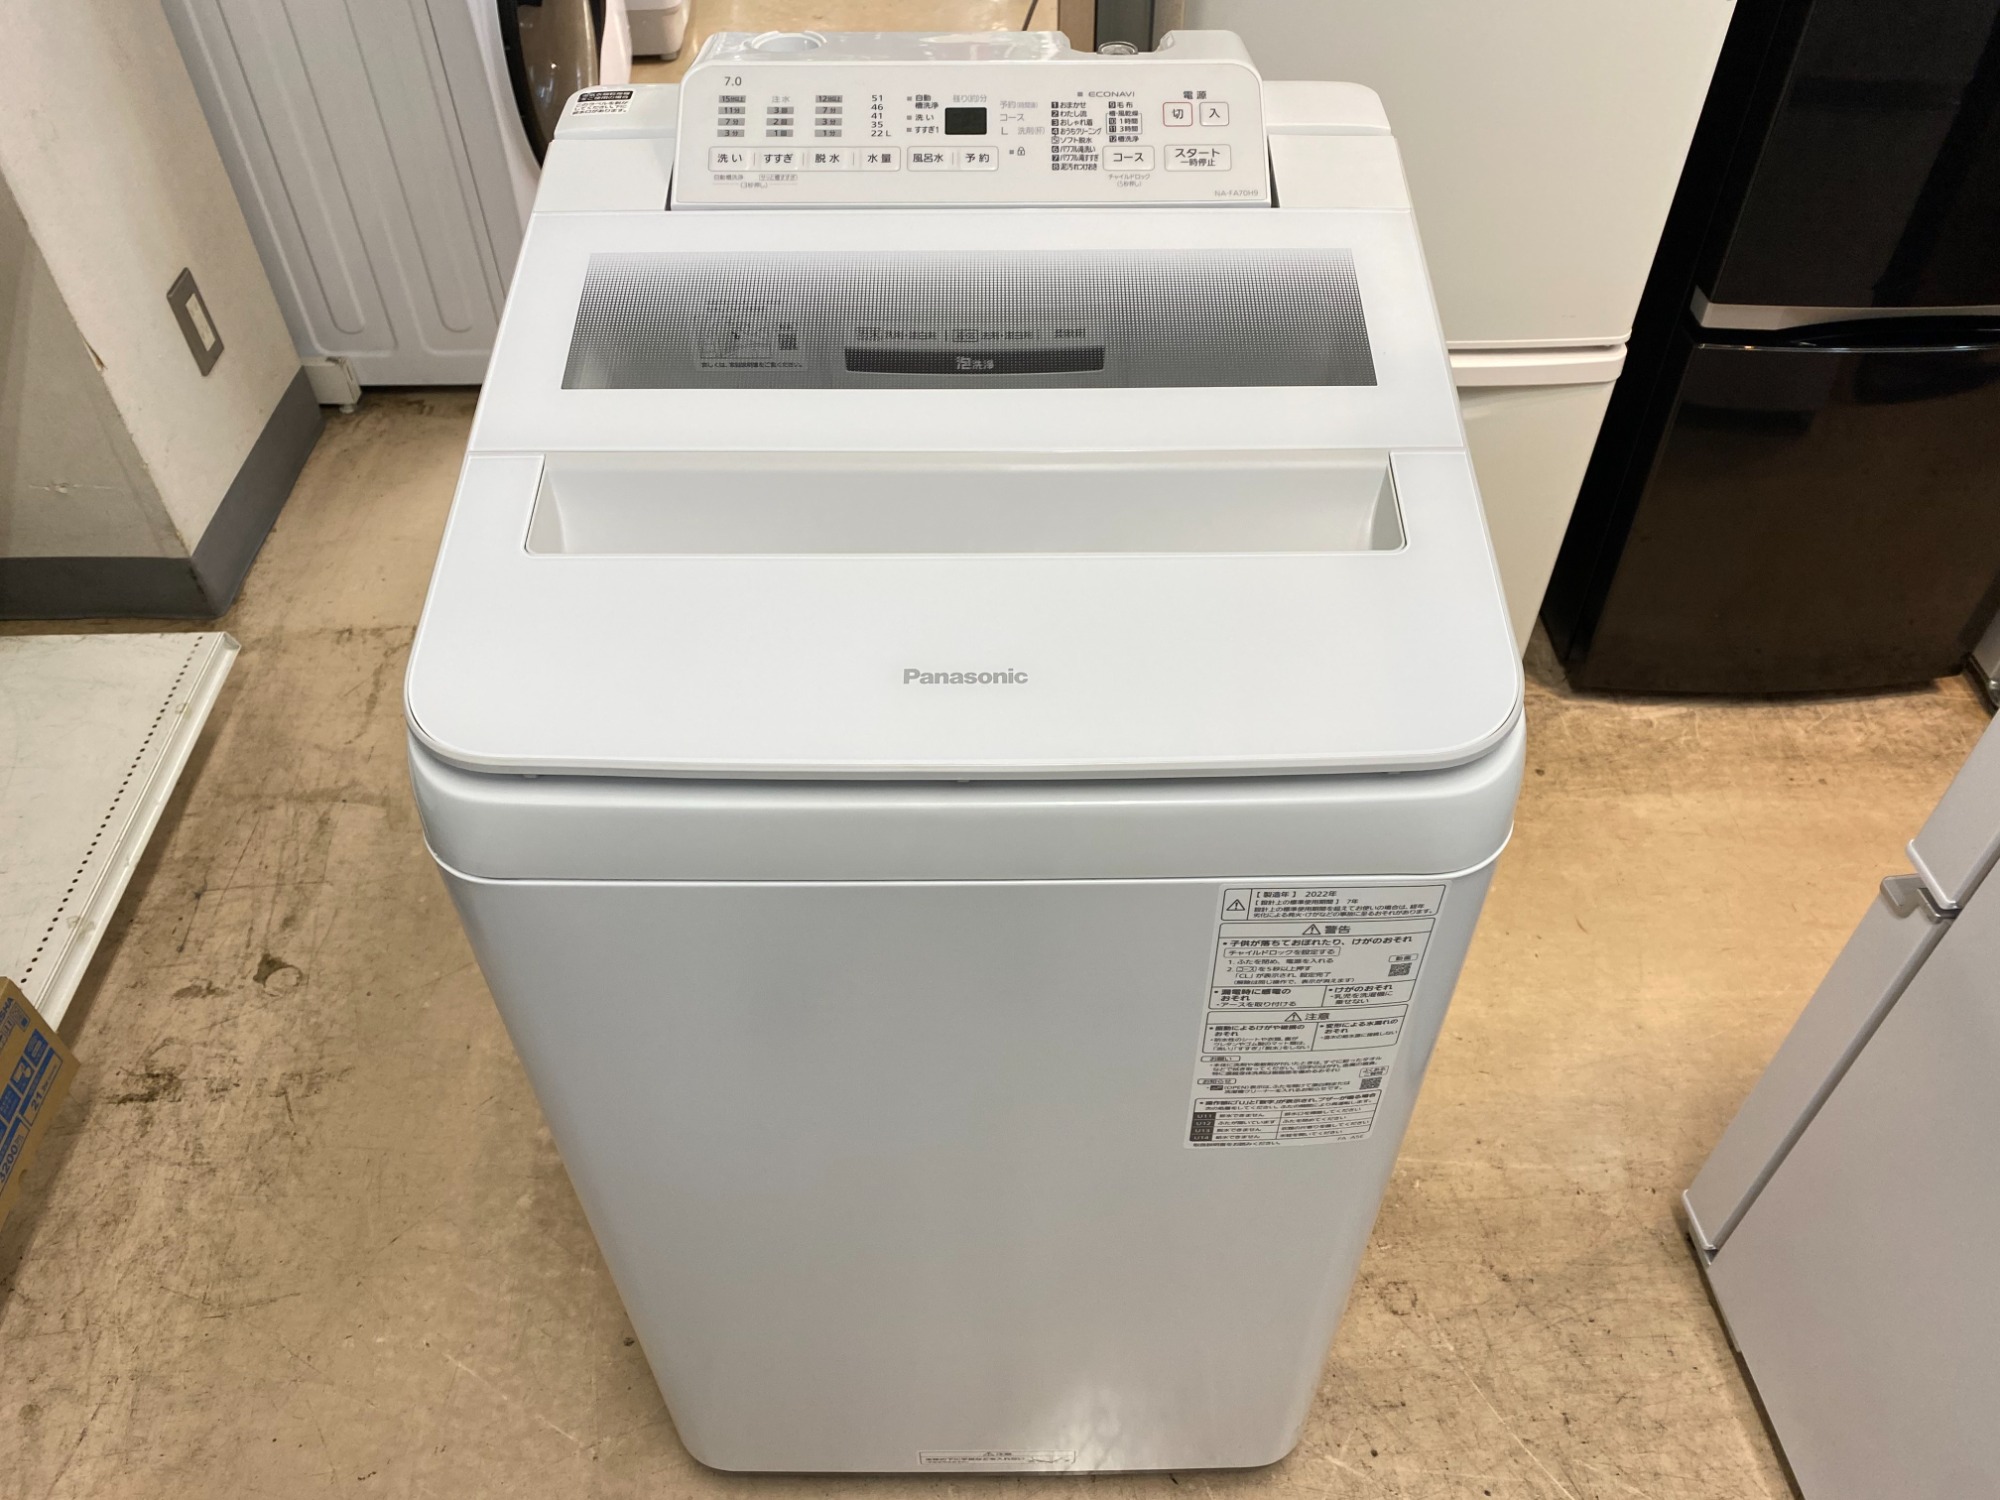 Panasonic(パナソニック)の全自動洗濯機 NA-FA70H9が買取入荷しました